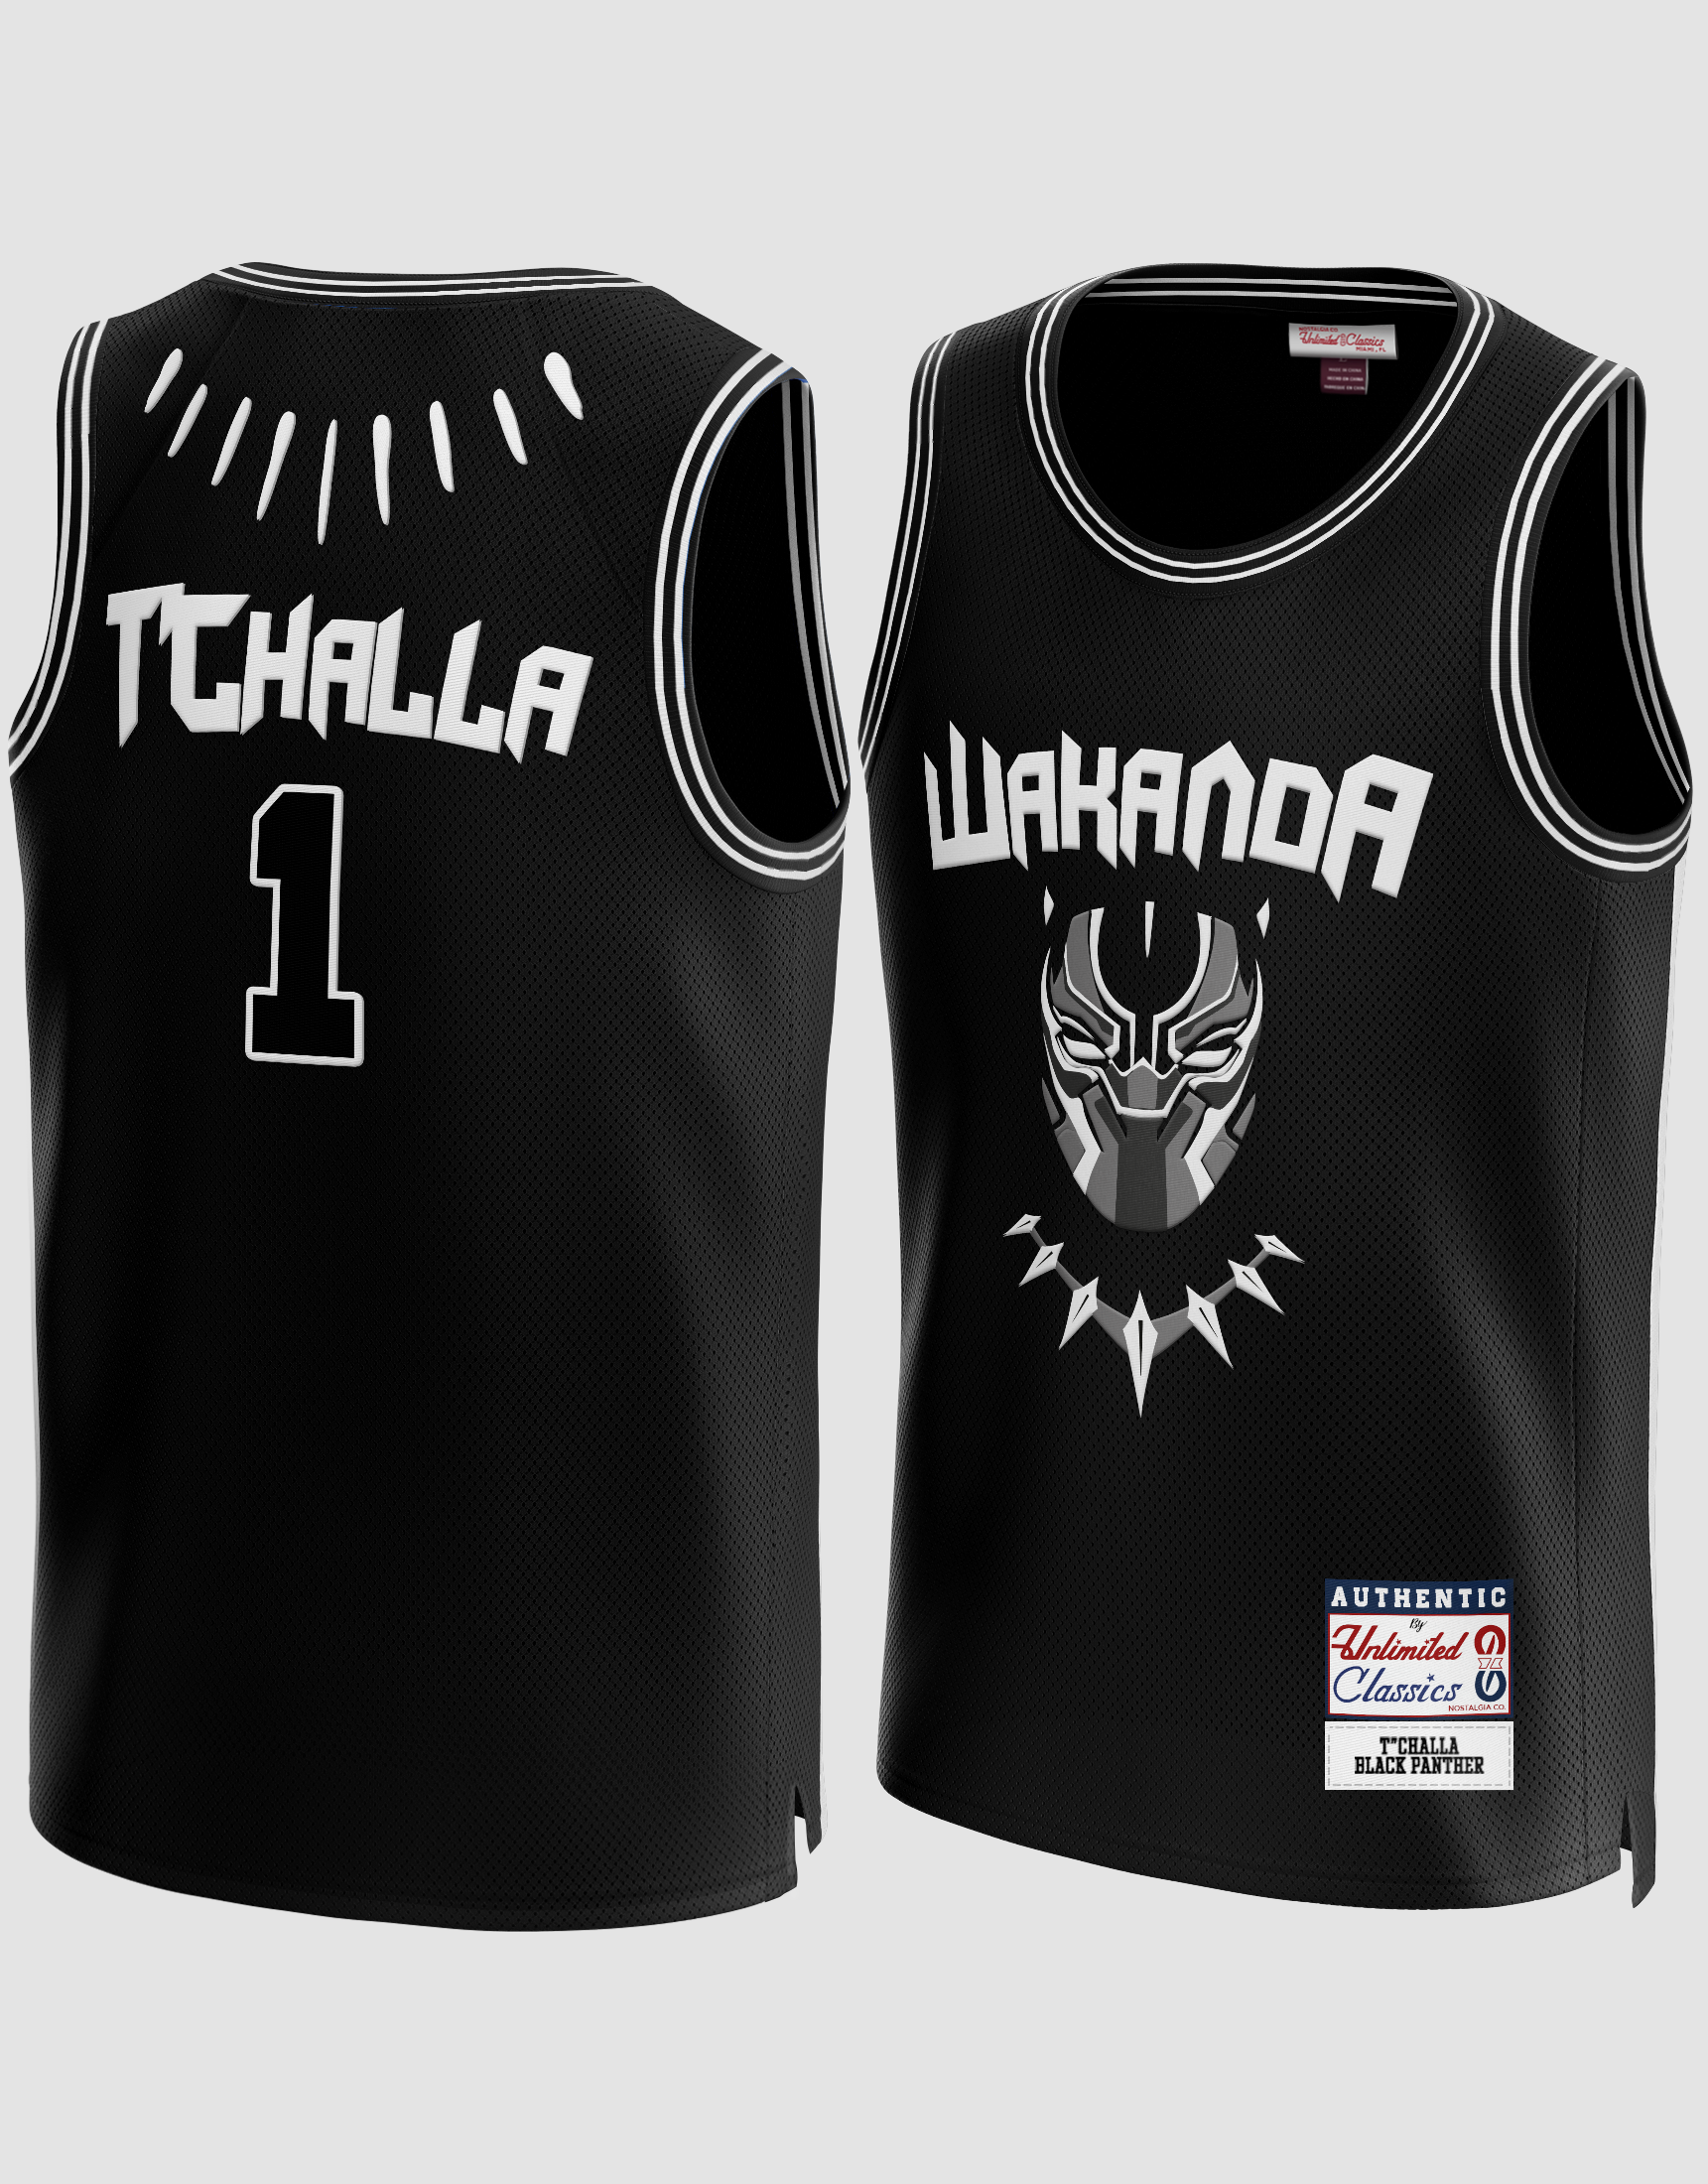 T'Challa #1 Wakanda Black Panther Basketball Jersey – unlimitedsportshop